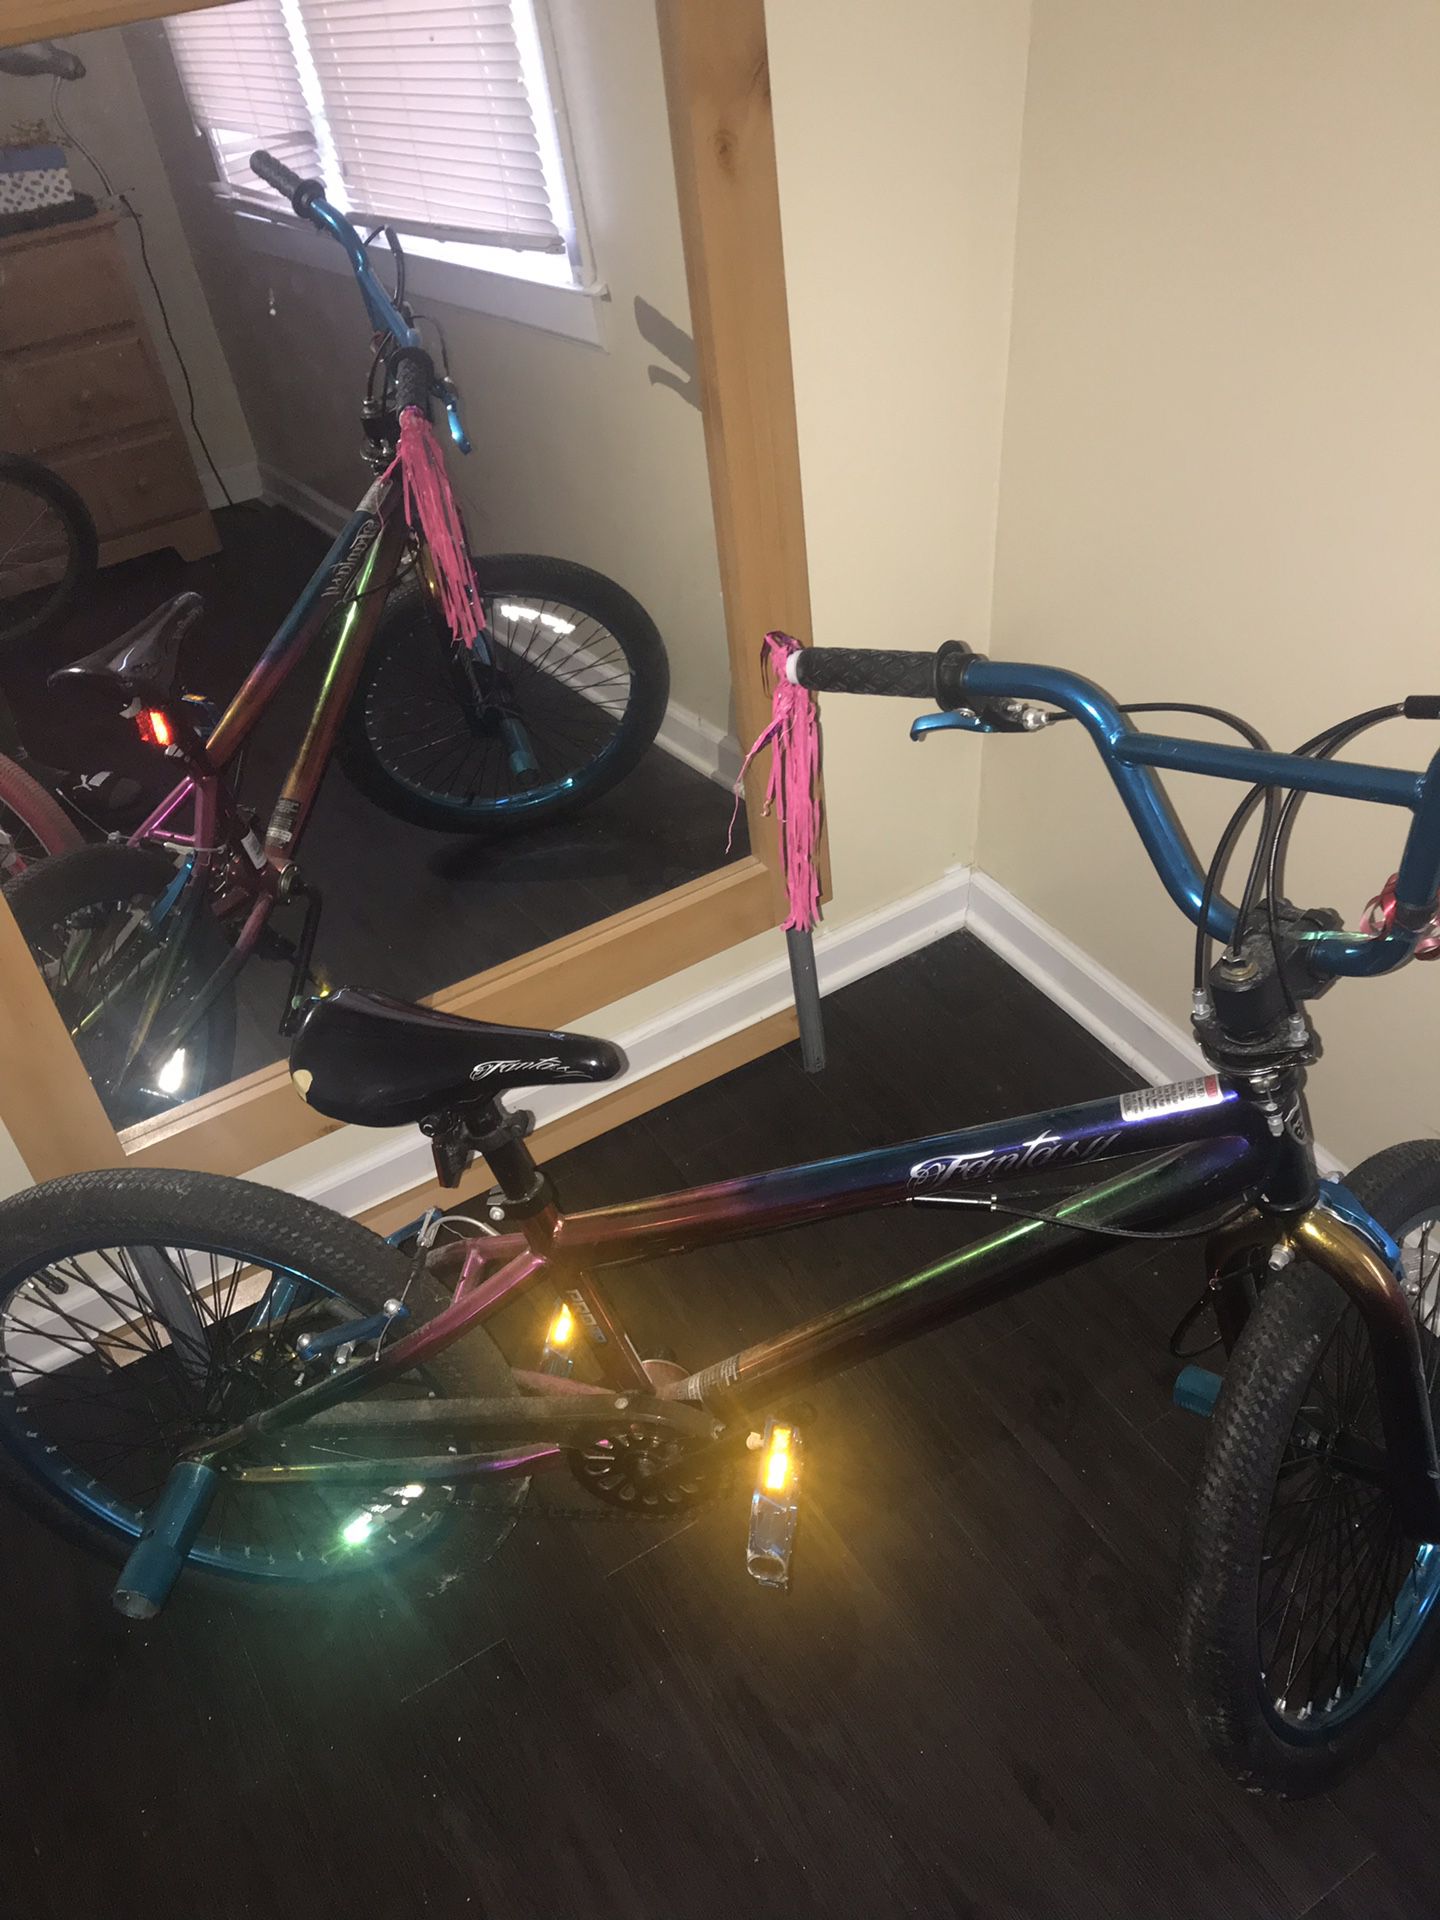 Child’s bike